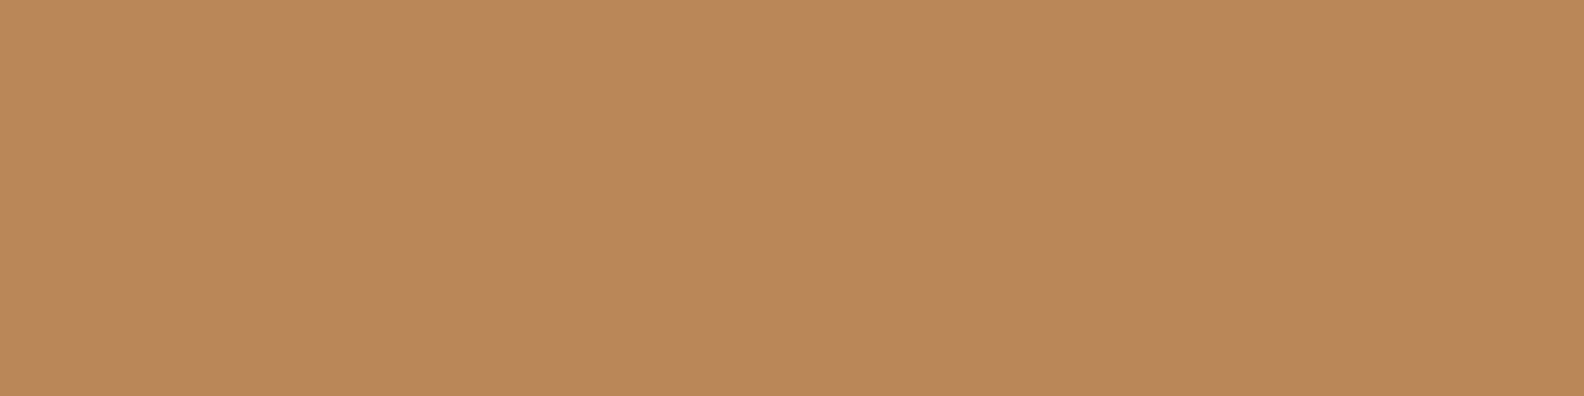 1584x396 Deer Solid Color Background